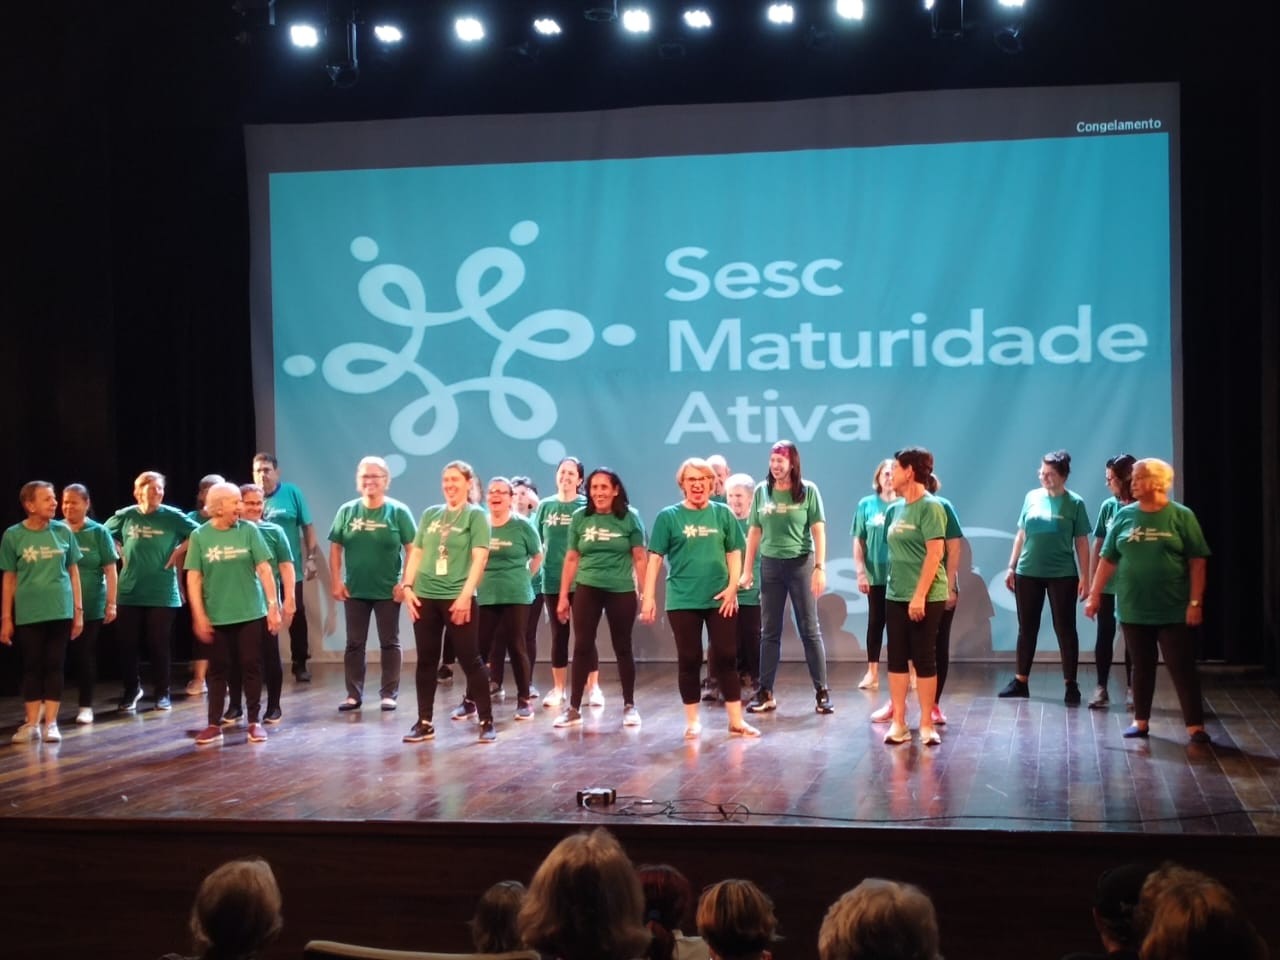 Imagem de 22 participantes da maturidade ativa de canoas sobre o palco do teatro com fundo de palco apresentando a logo e o nome "Sesc Maturidade Ativa"